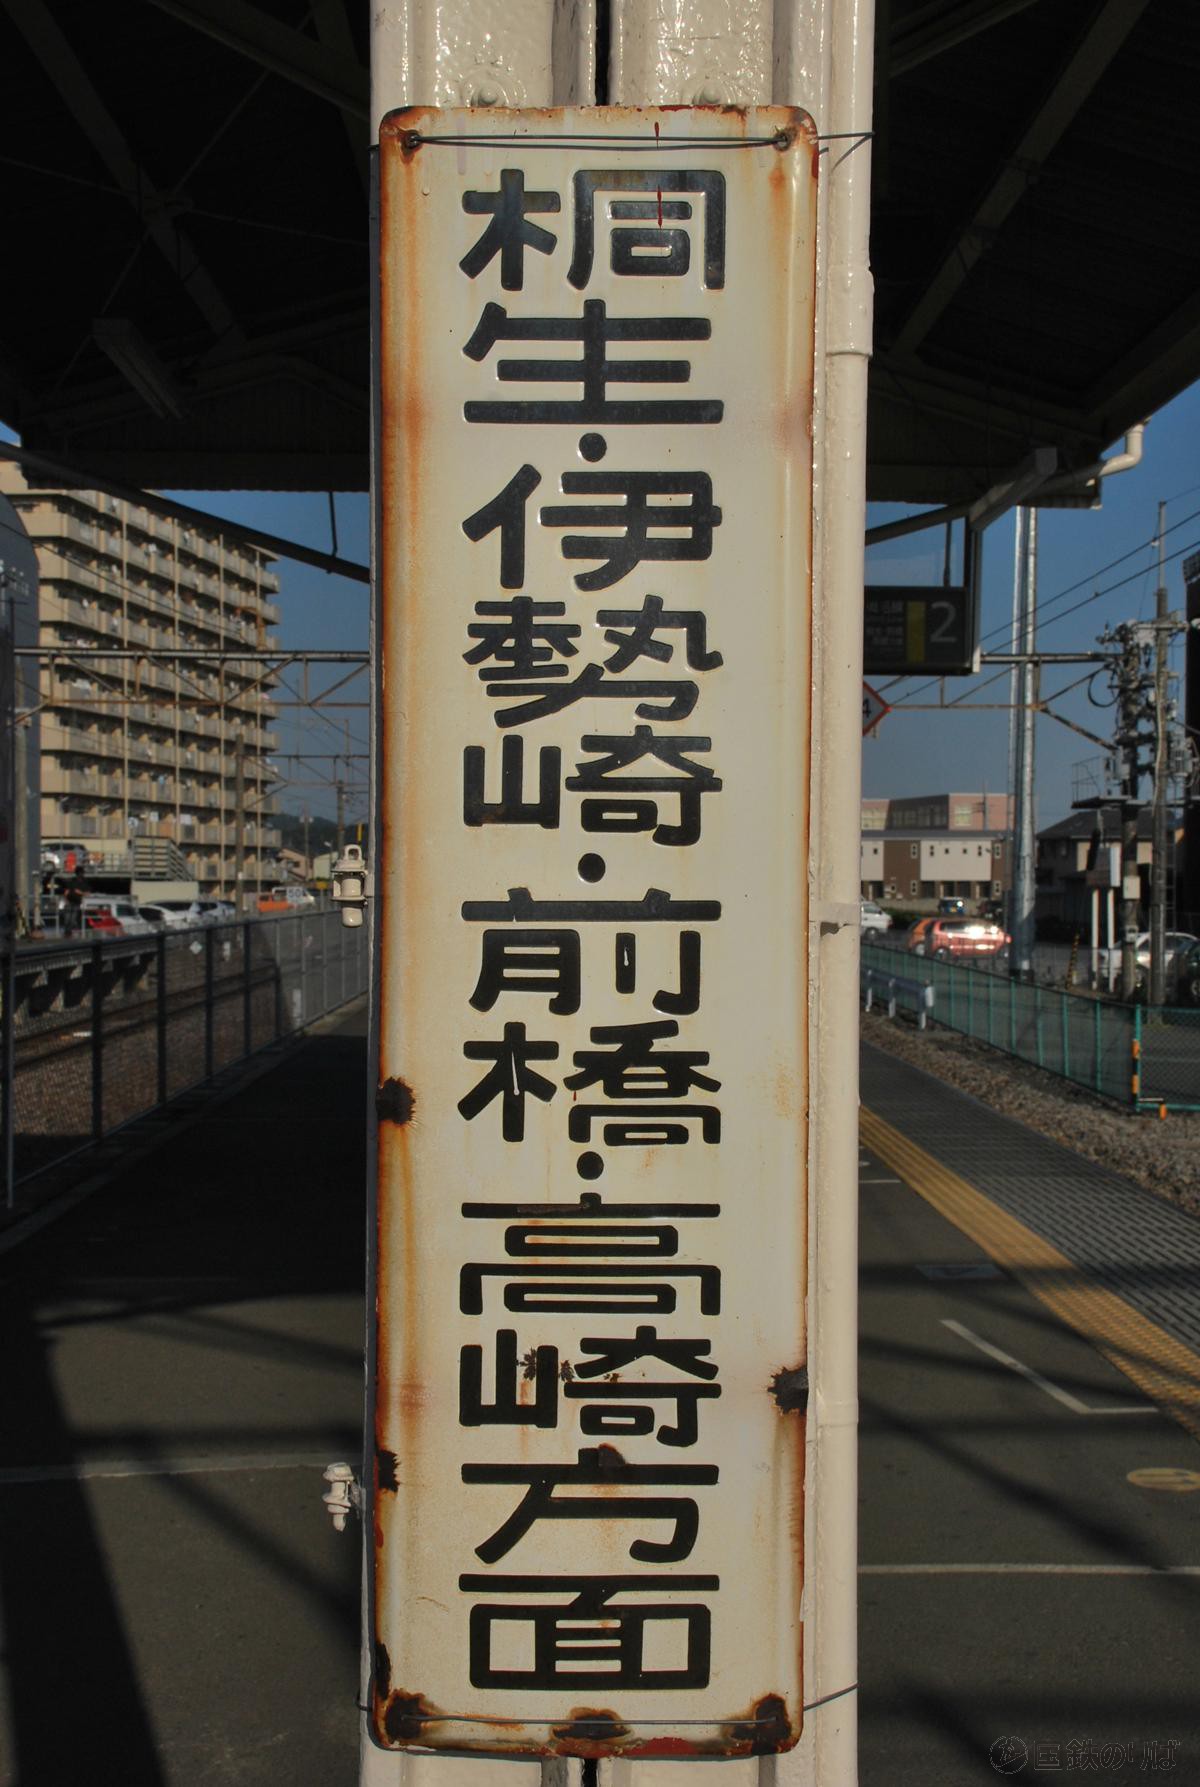 両毛線足利駅のホーロー看板、上り桐生・伊勢崎・前橋・高崎方面。